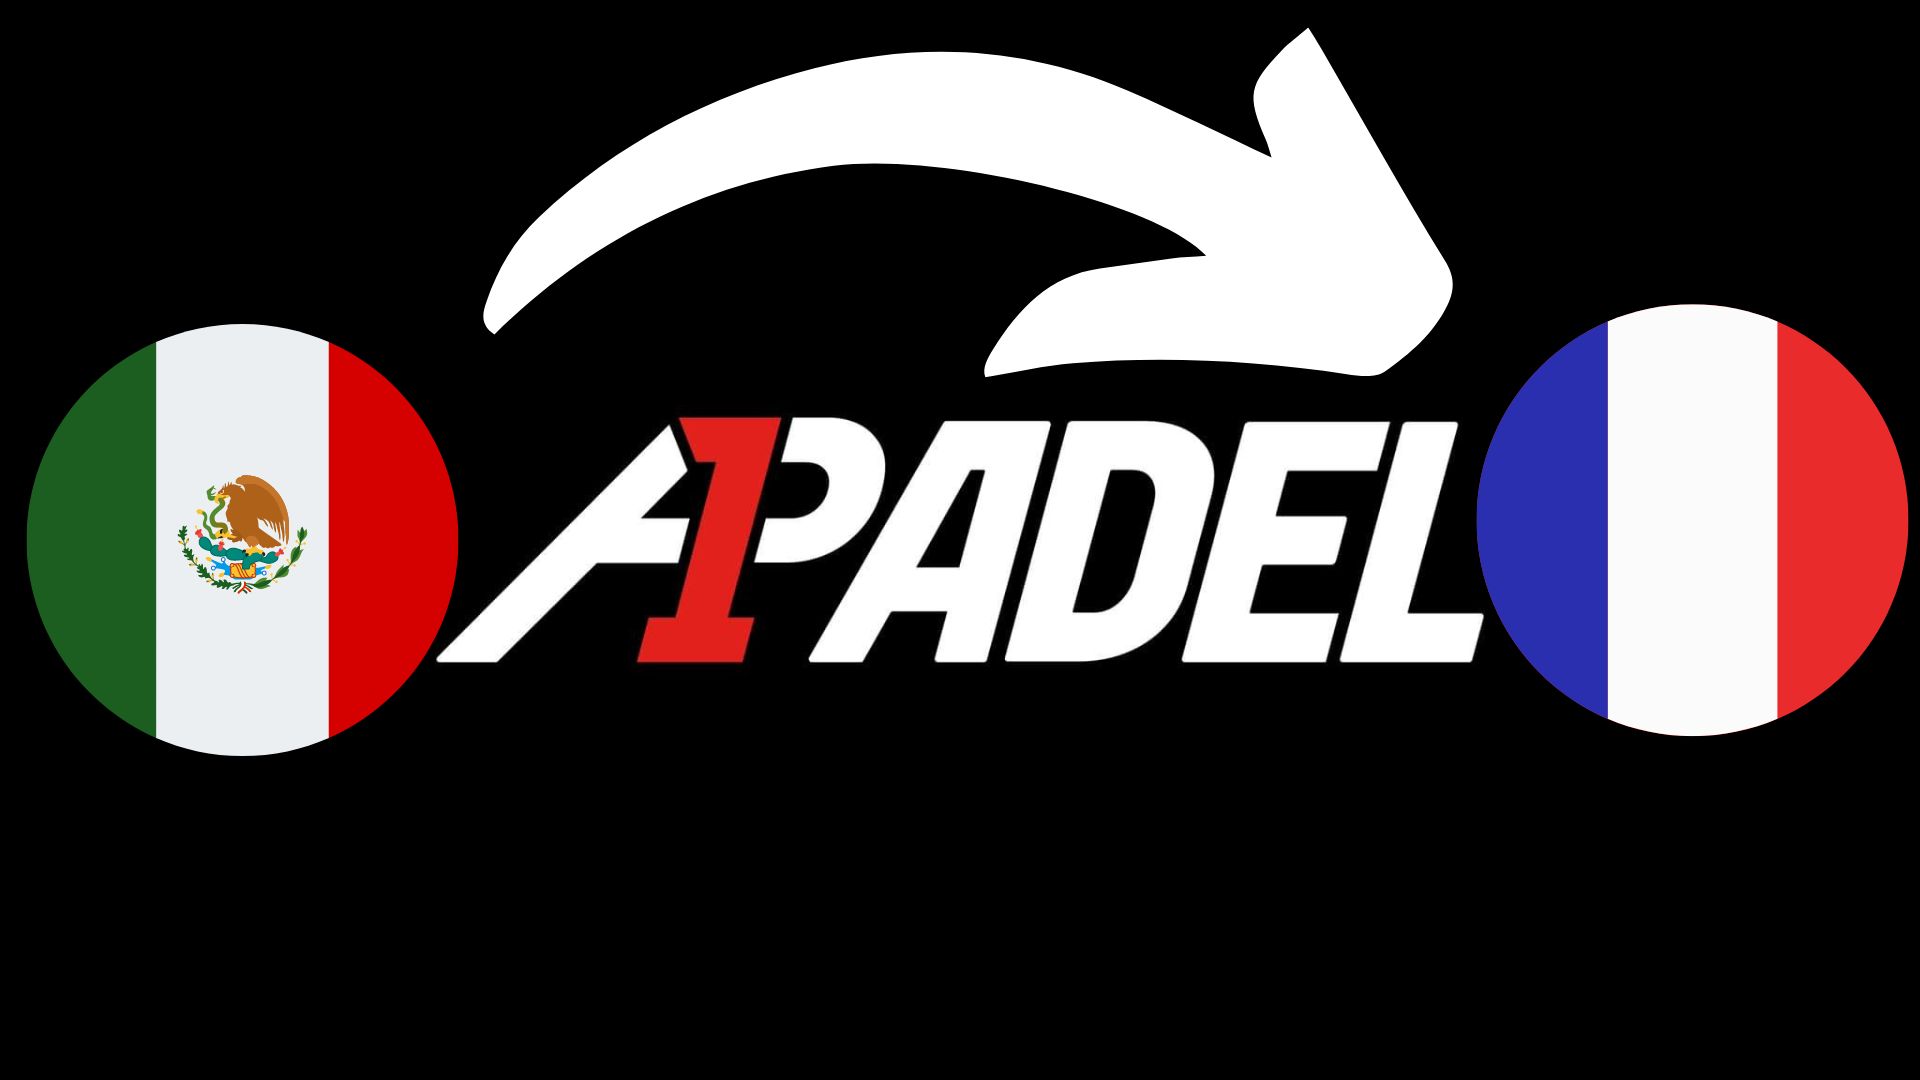 A1 Padel Frans Open Mexico